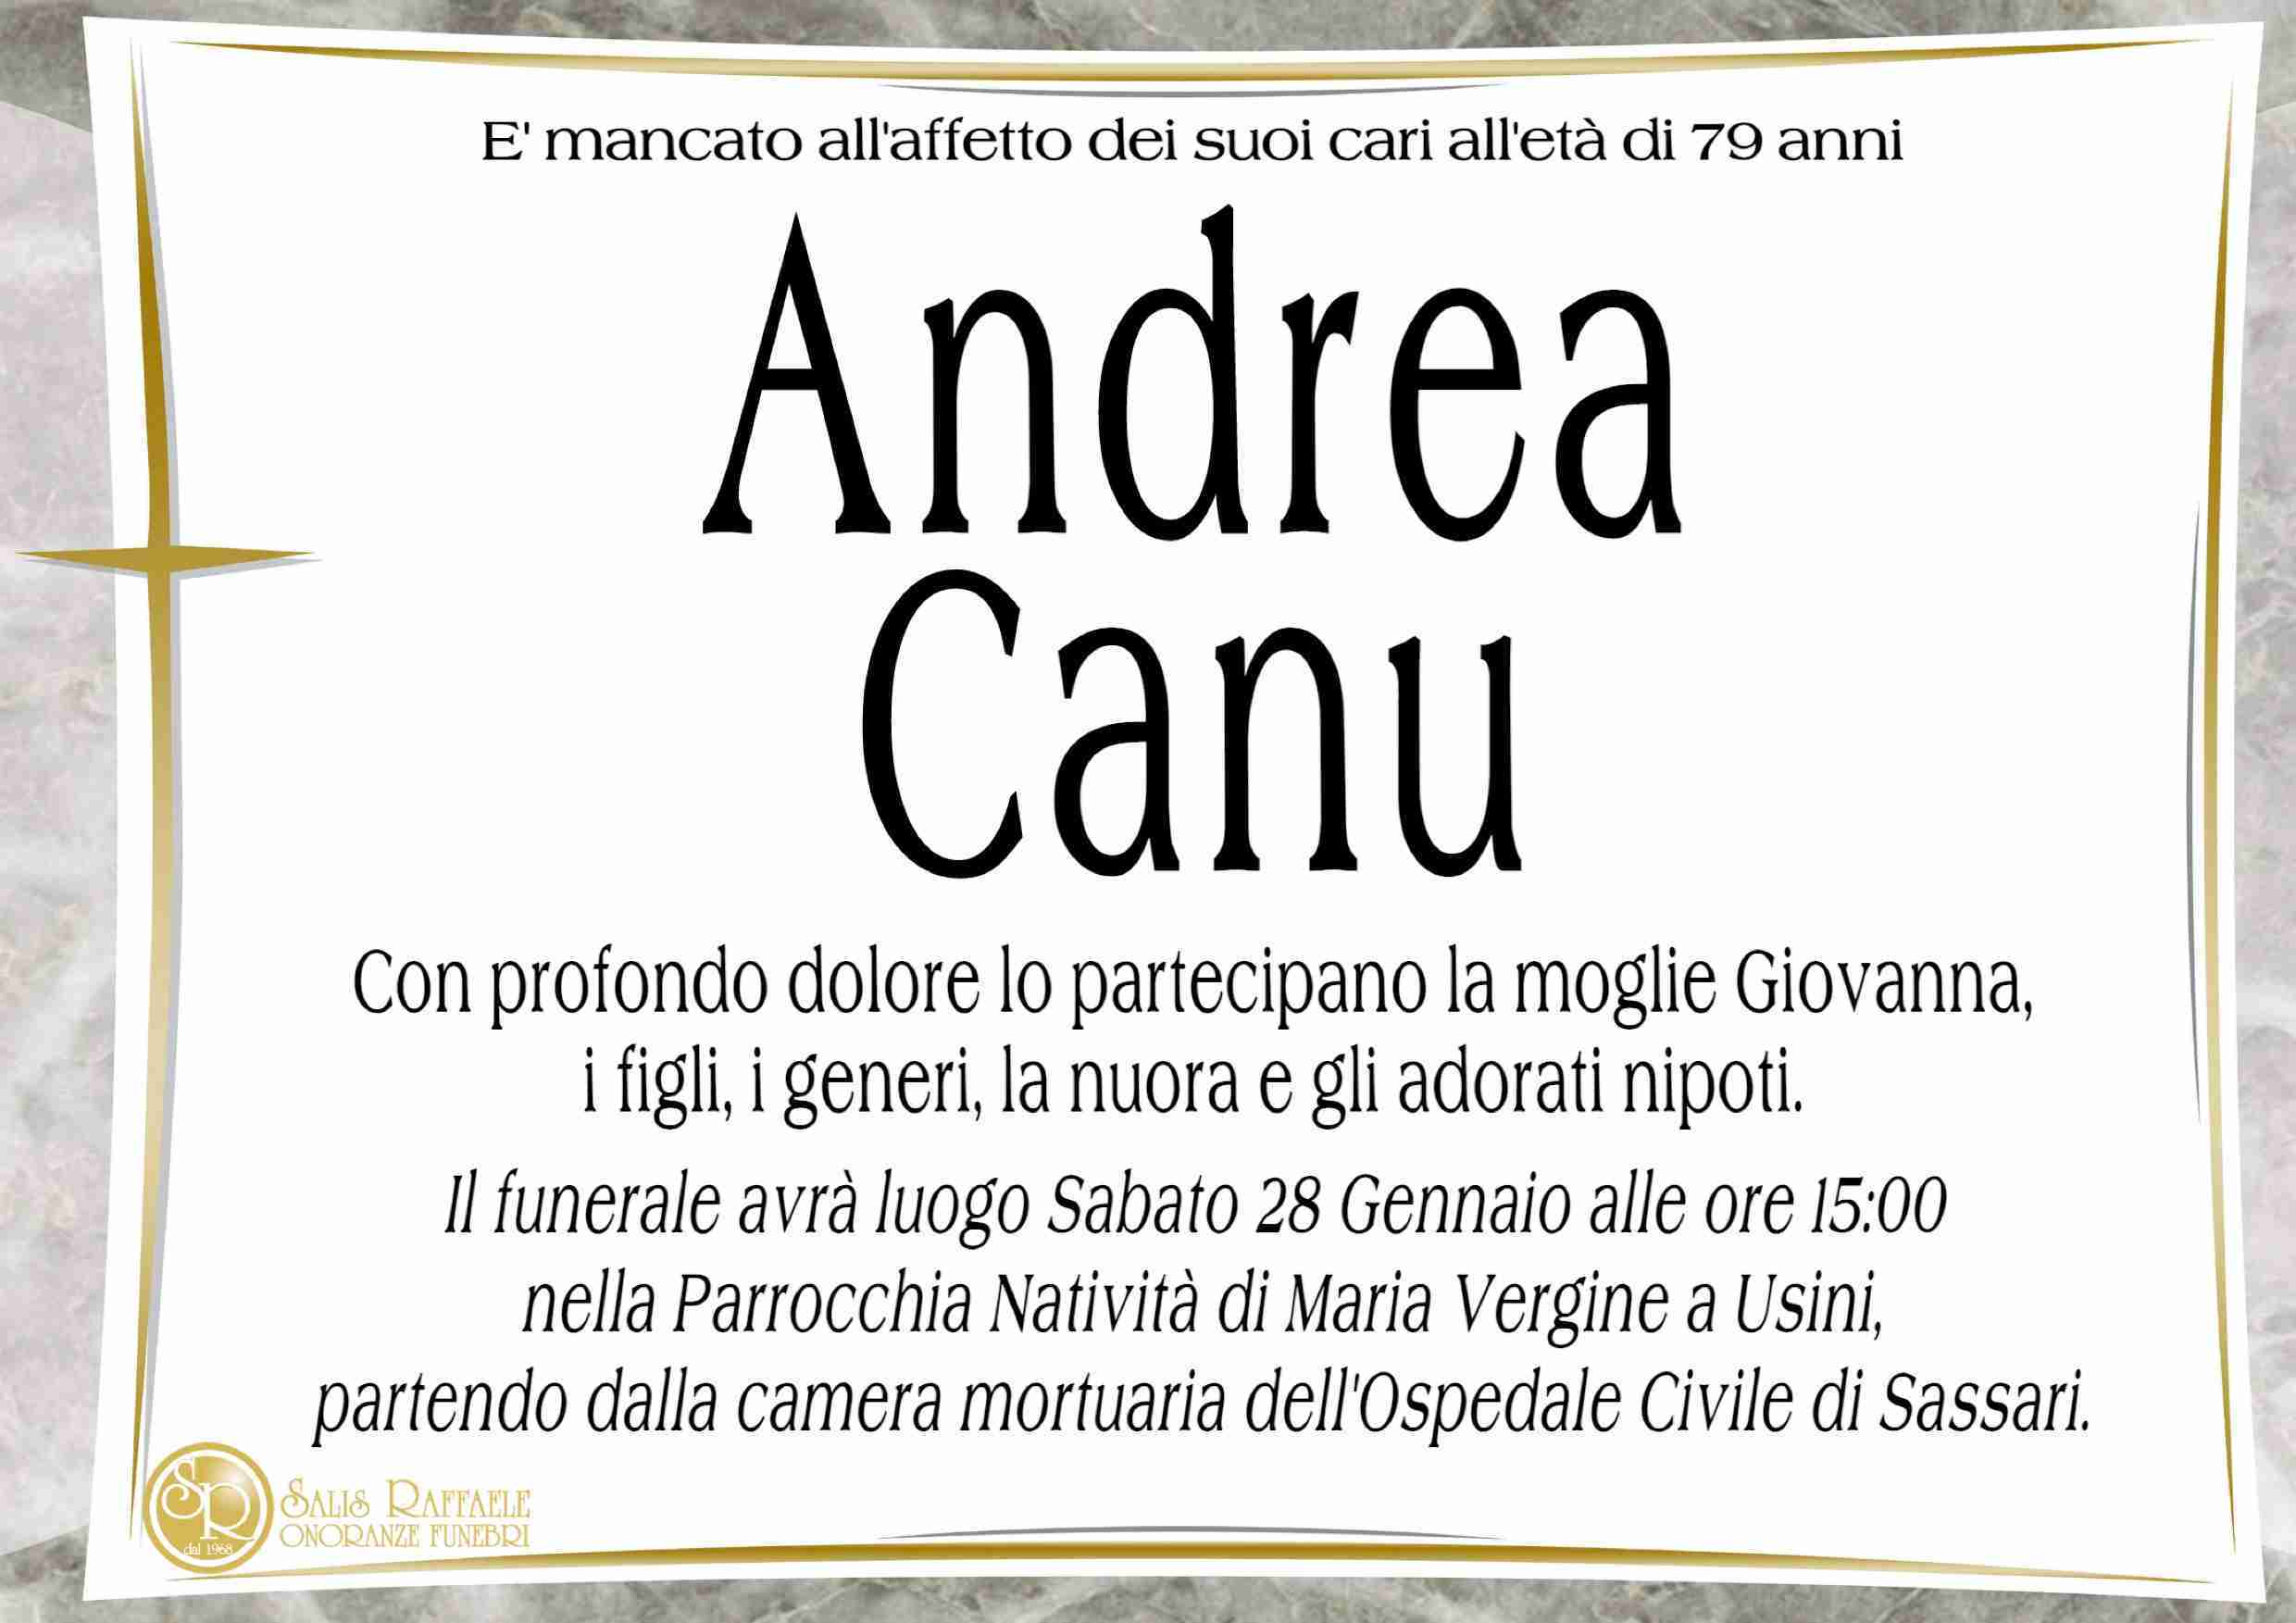 Andrea Canu